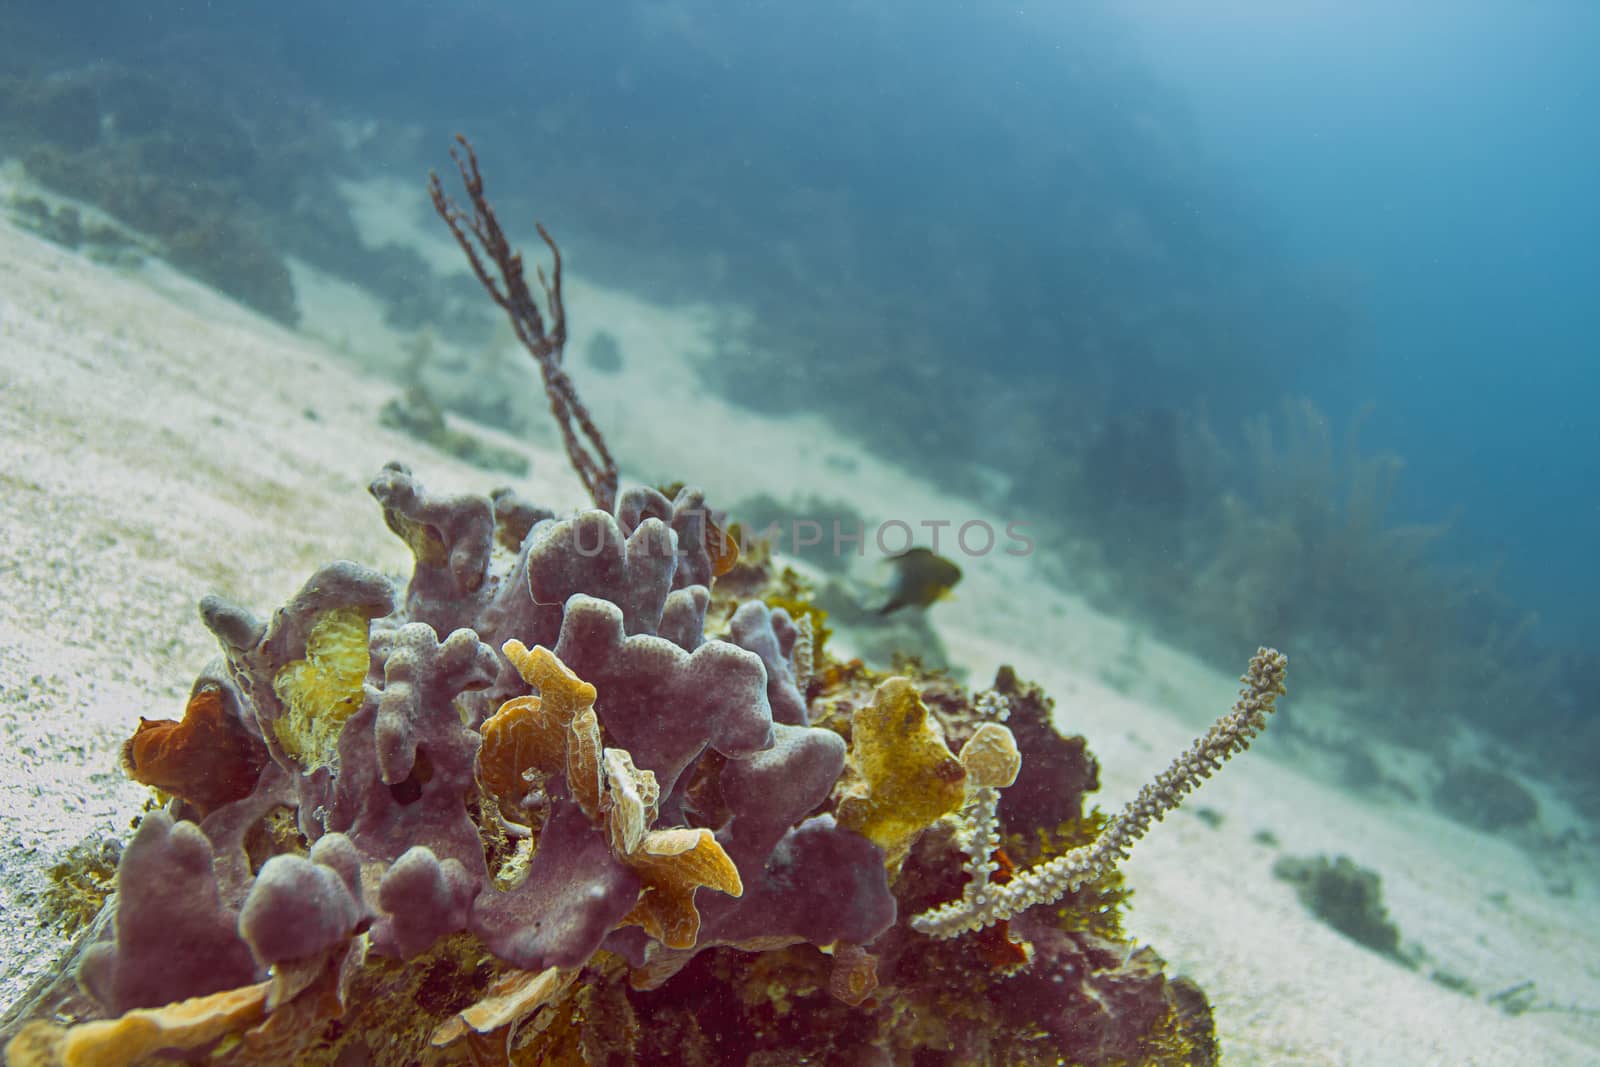 Part of an Atlantic coral reef deep underwater